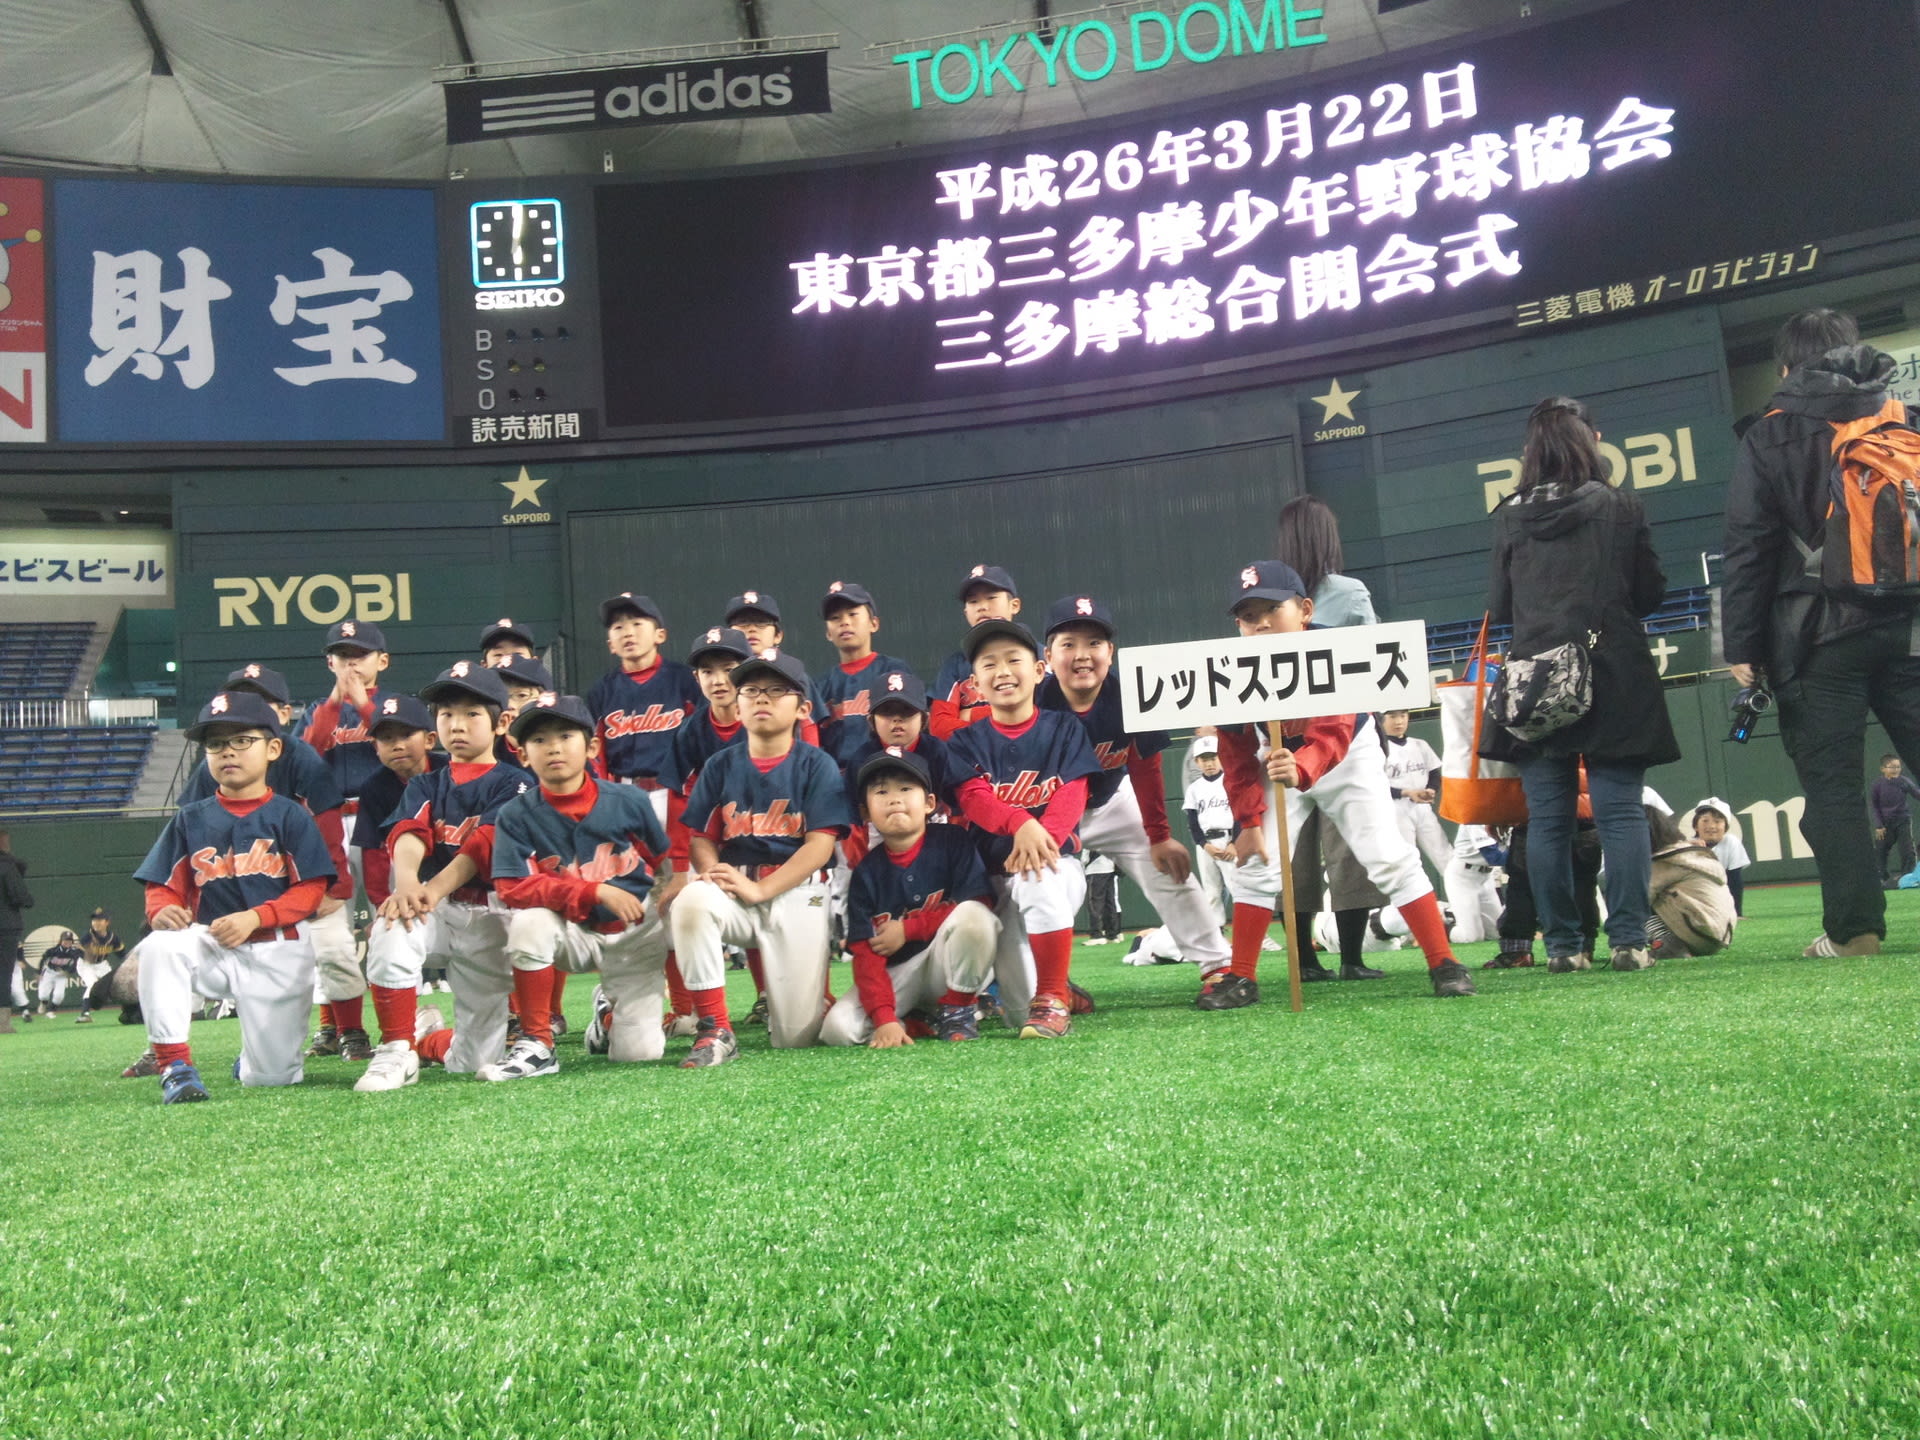 東京都三多摩少年野球大会 - レッドスワローズ